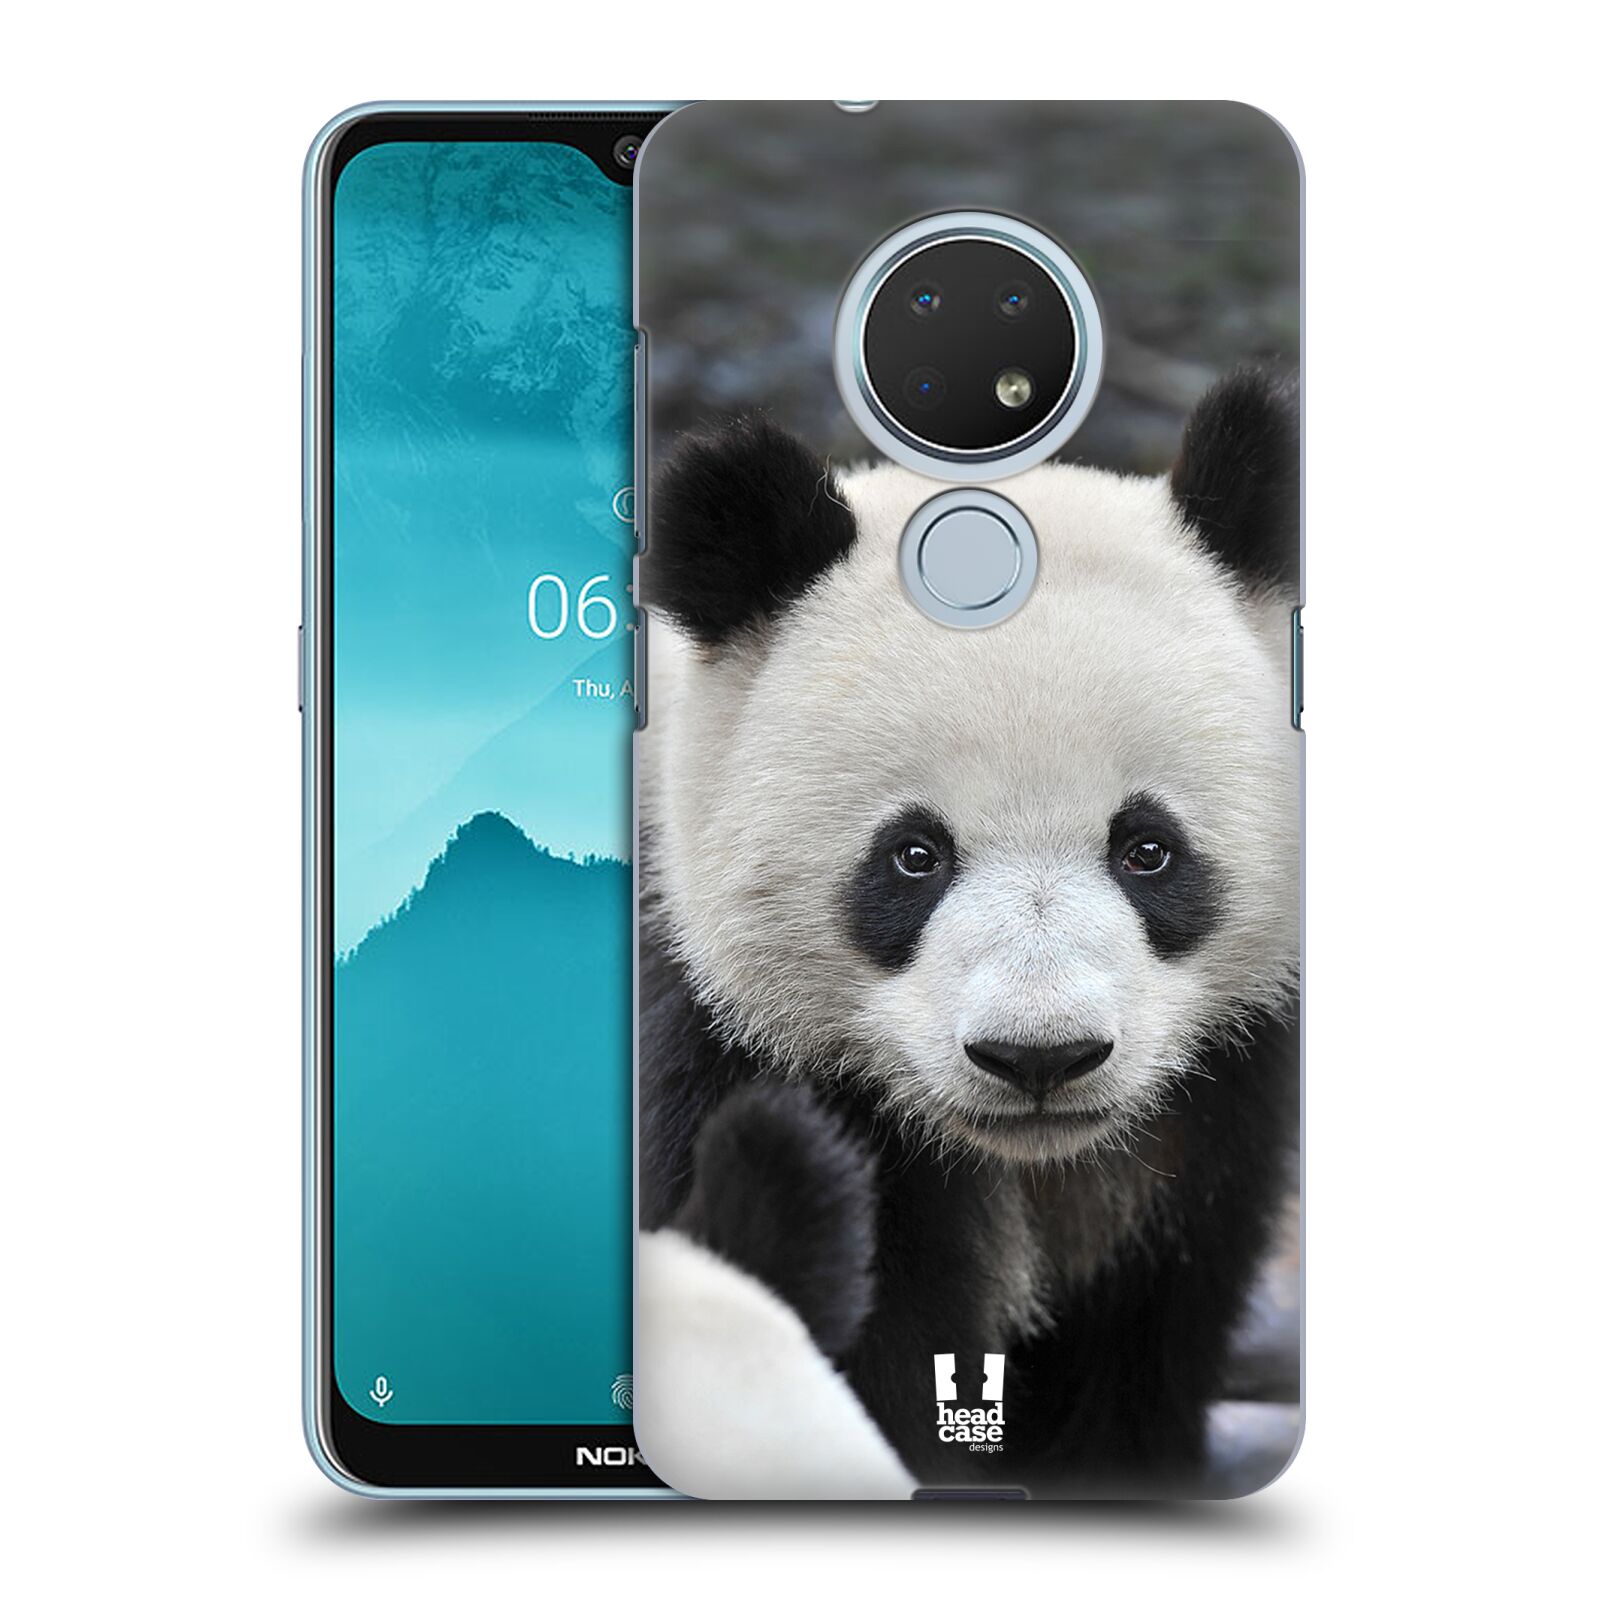 Pouzdro na mobil Nokia 6.2 - HEAD CASE - vzor Divočina, Divoký život a zvířata foto MEDVĚD PANDA